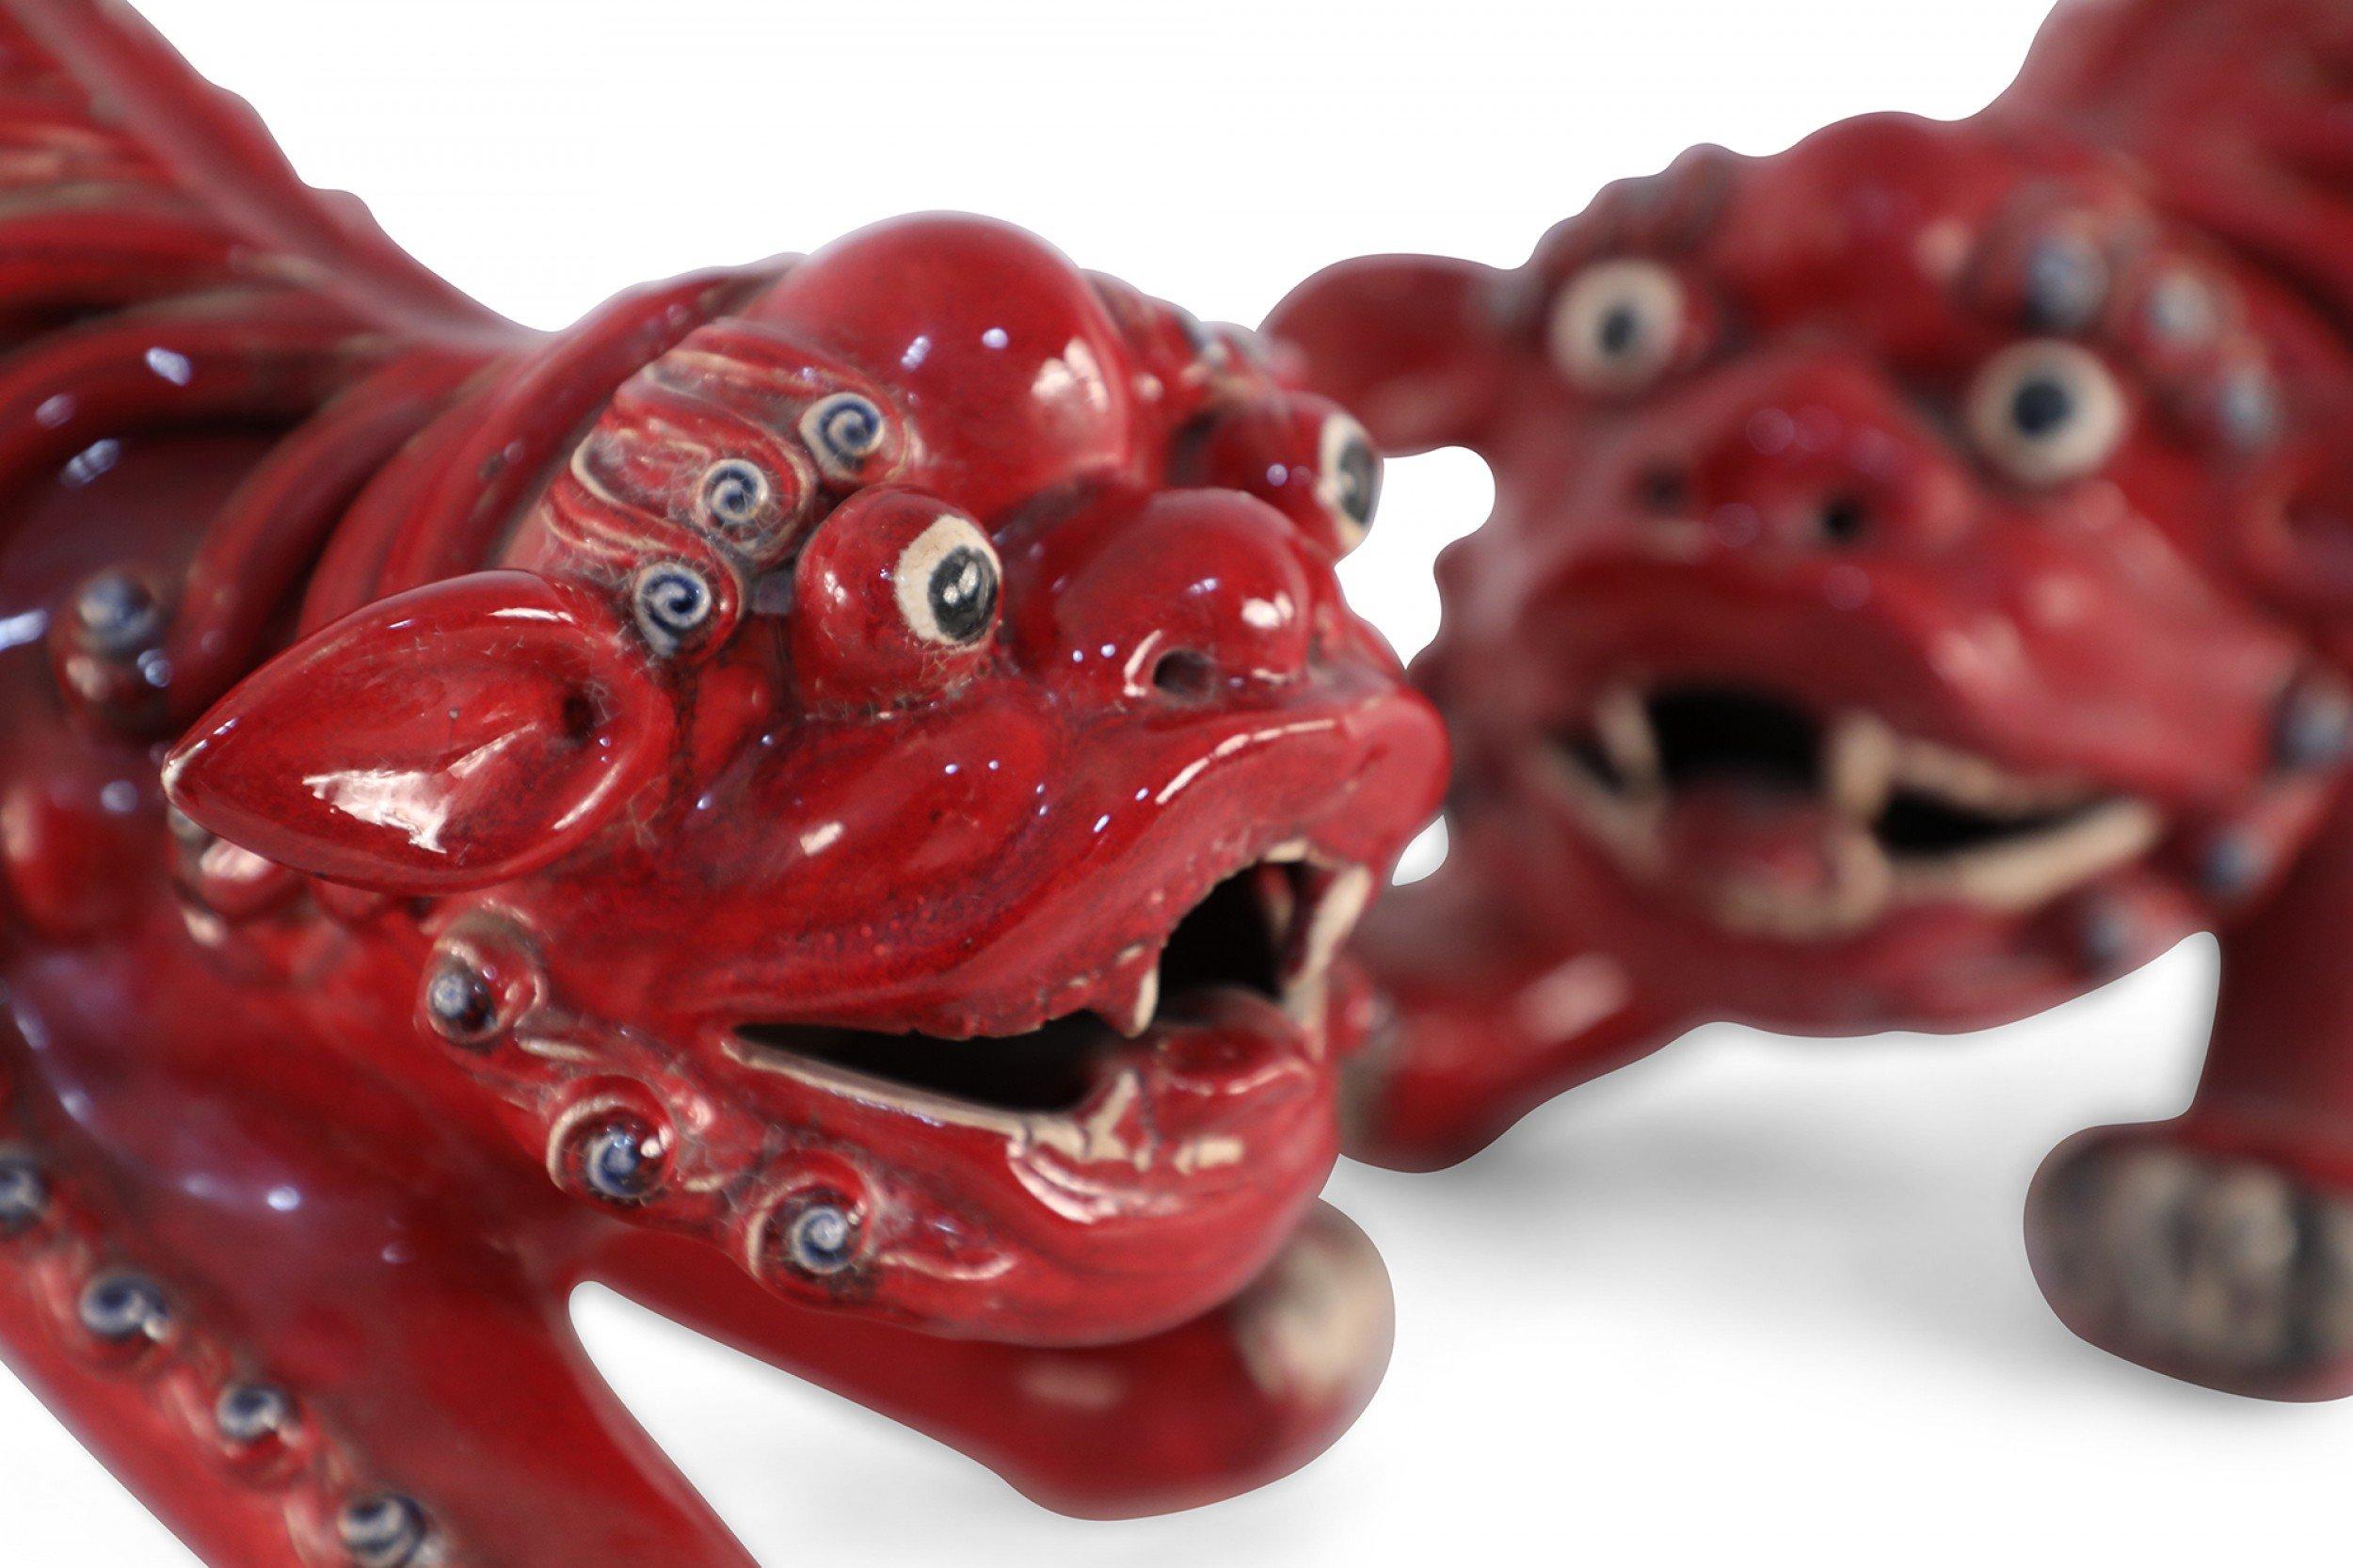 Paire de chiens foo en porcelaine rouge de Chine aux expressions pleines d'entrain, aux détails et à la ville de shiwan dans les formes de guangdong - foyer de l'un des plus célèbres fours folkloriques pendant les dynasties ming et qing, réputé pour